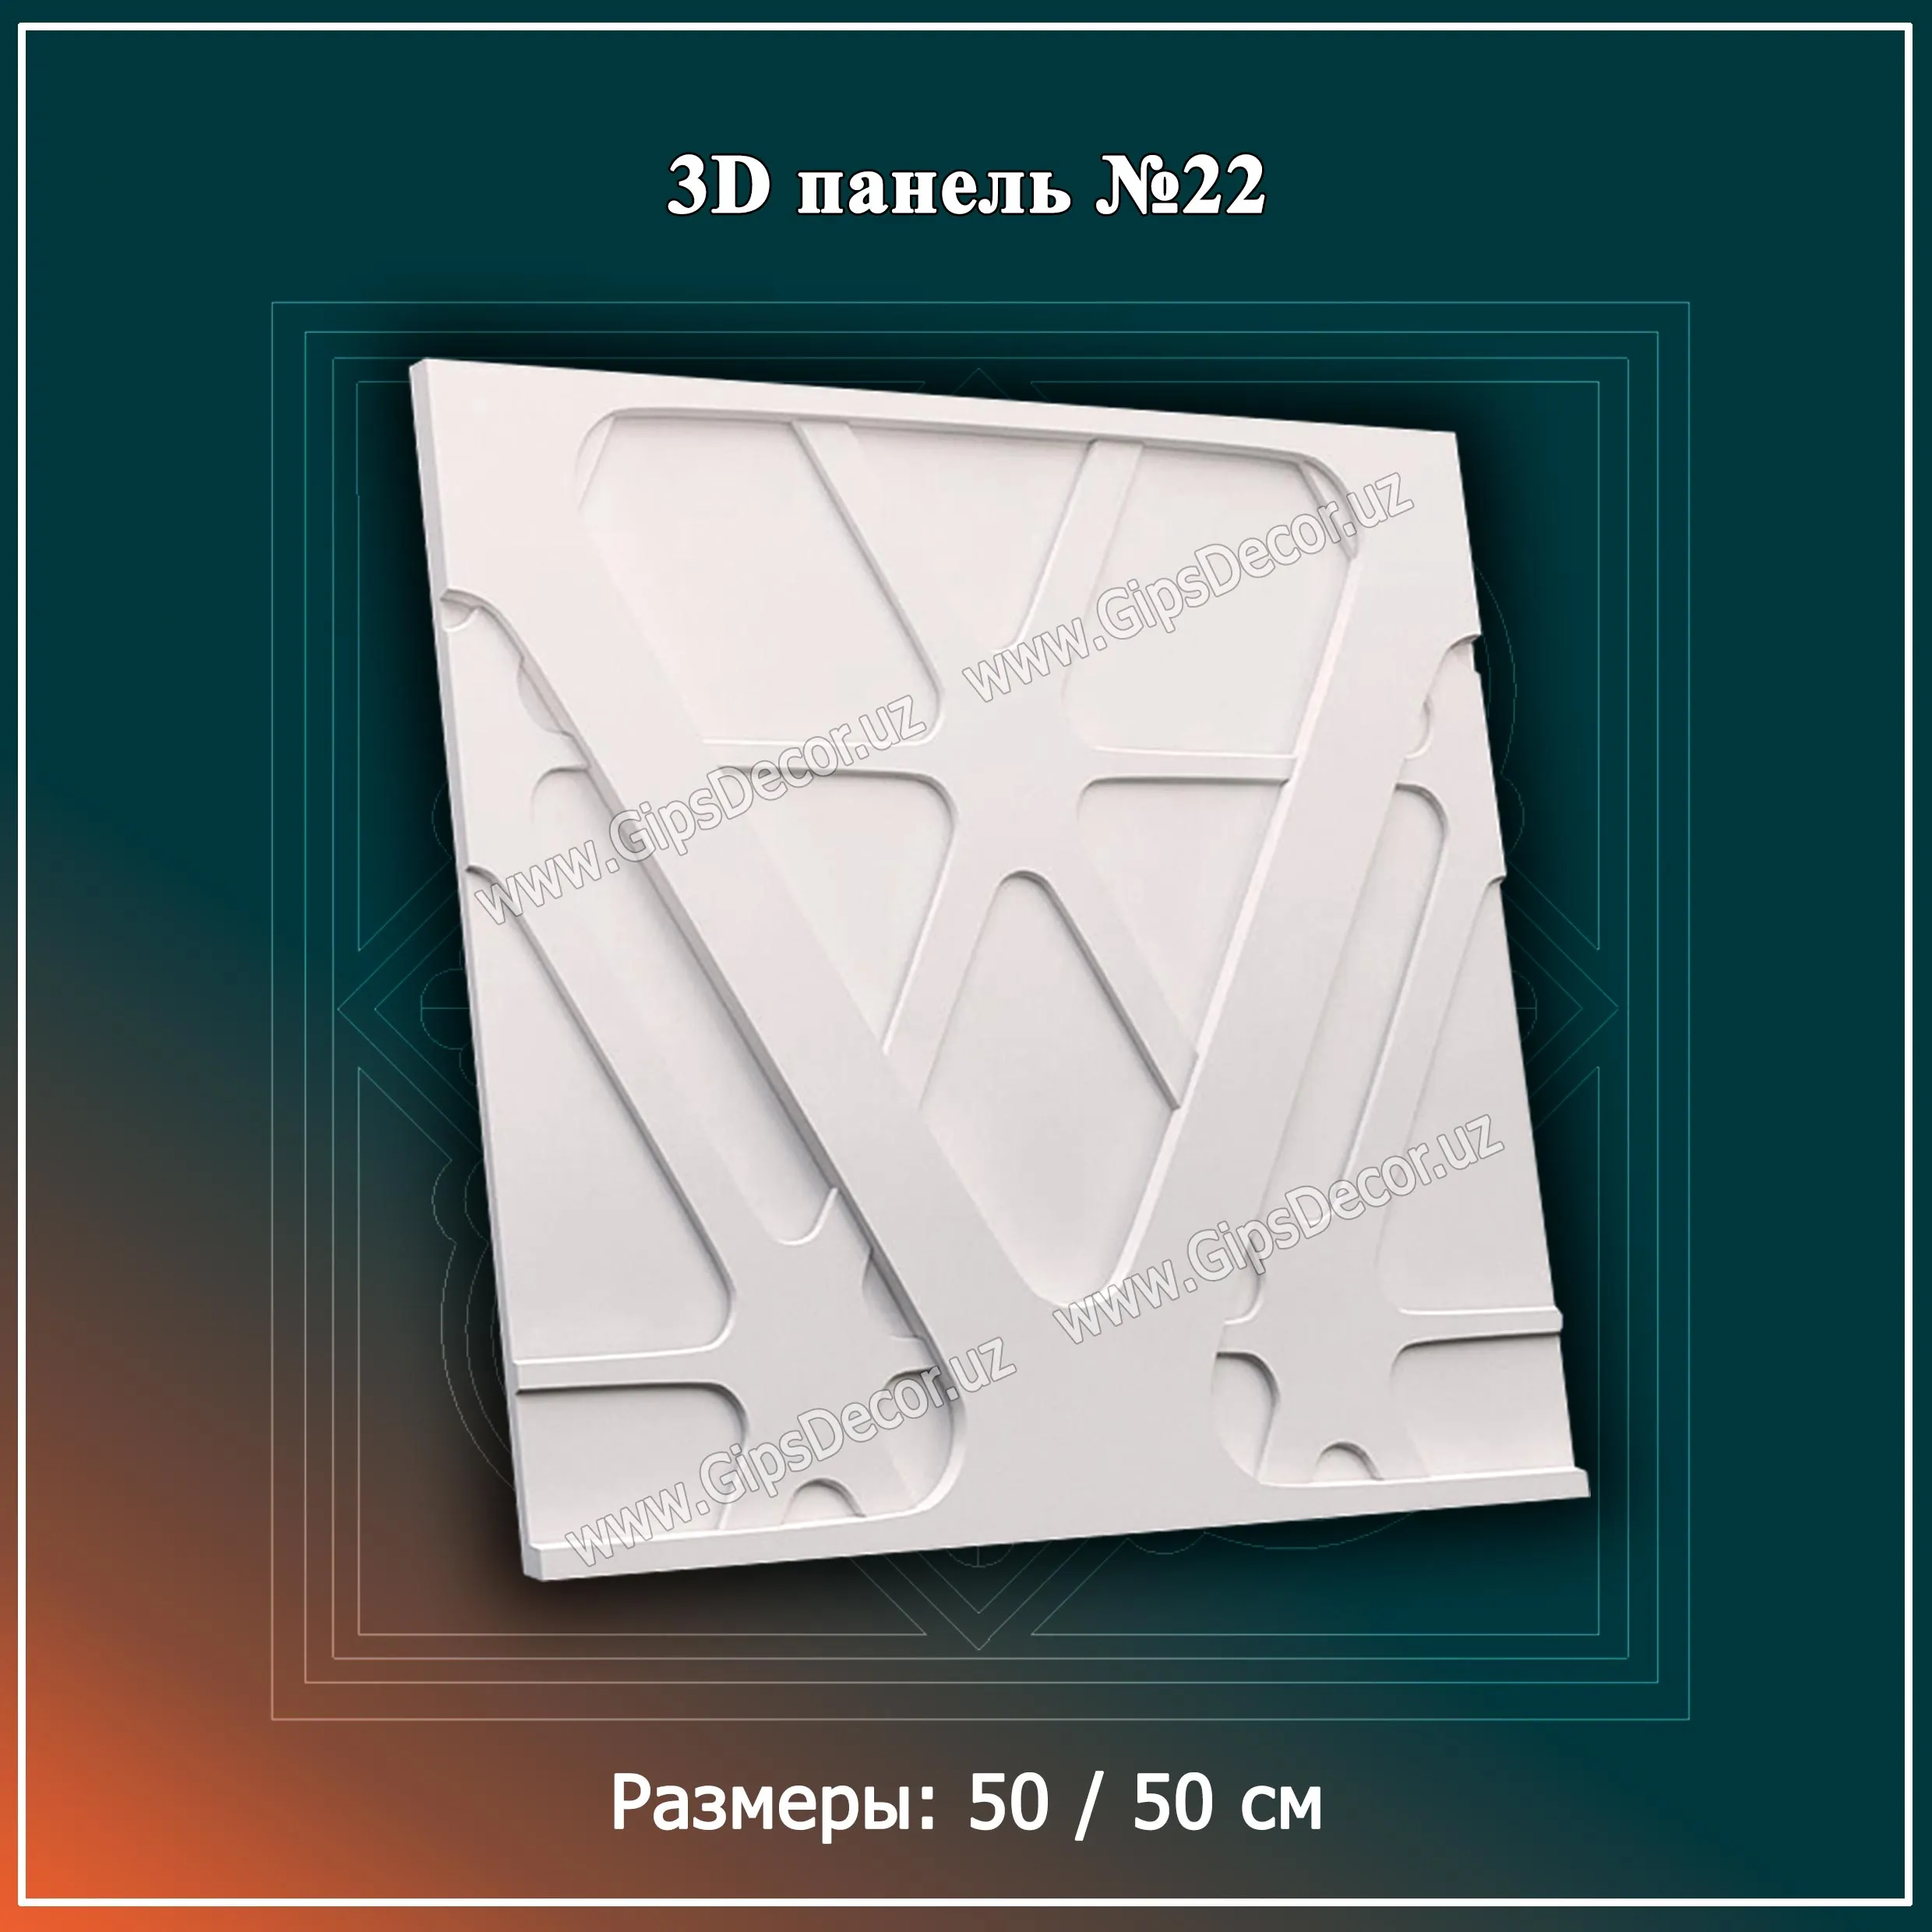 3D Панель №22 Размеры: 50 / 50 см#1